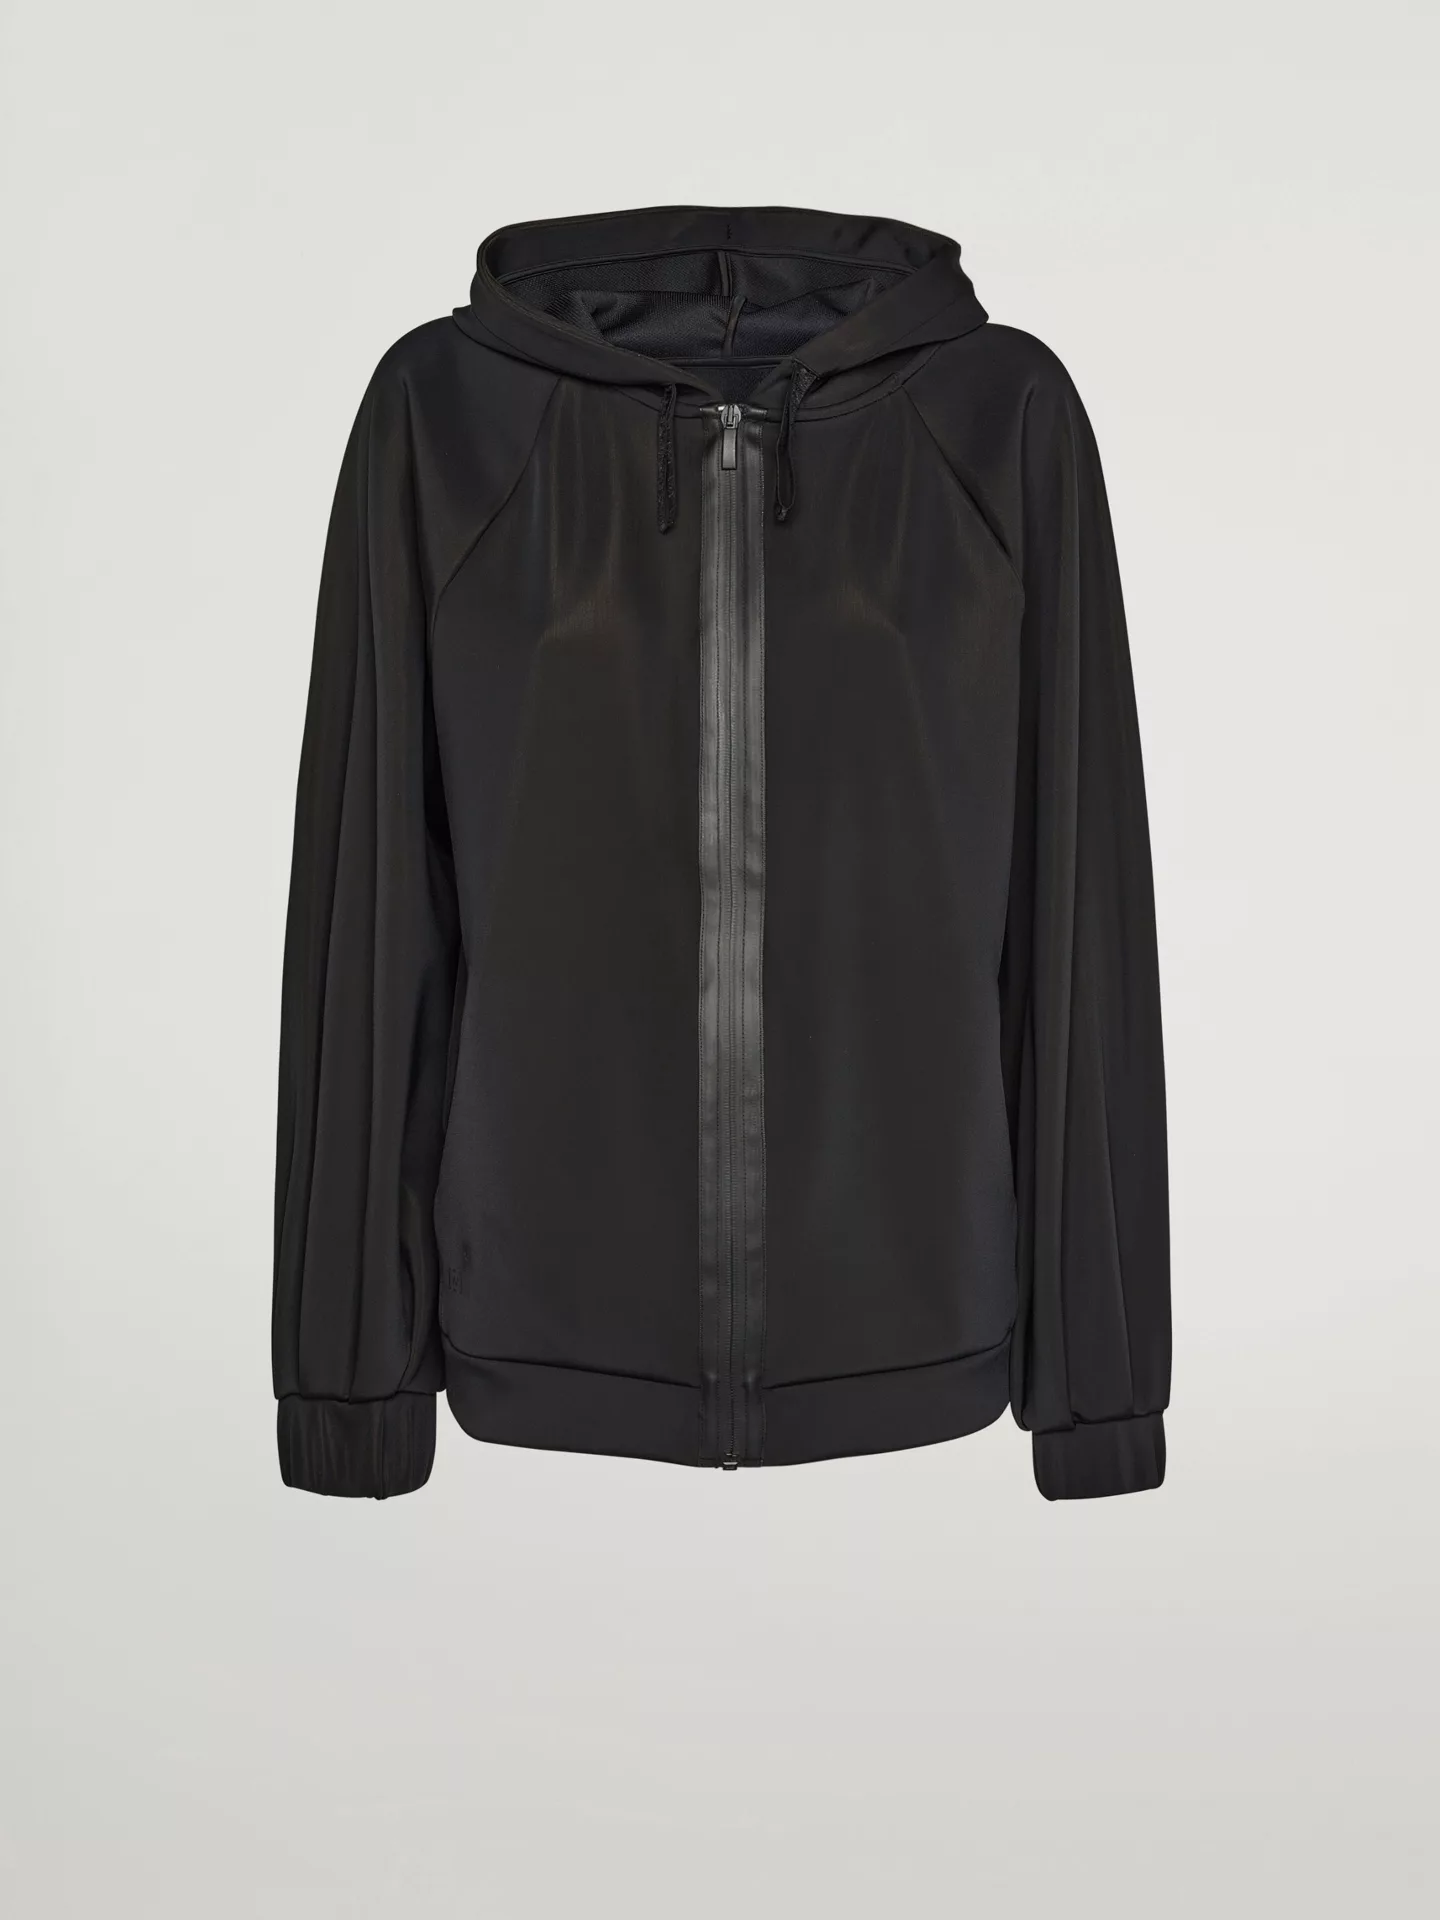 Wolford - Net overlay Jacket, Frau, black, Größe: M günstig online kaufen